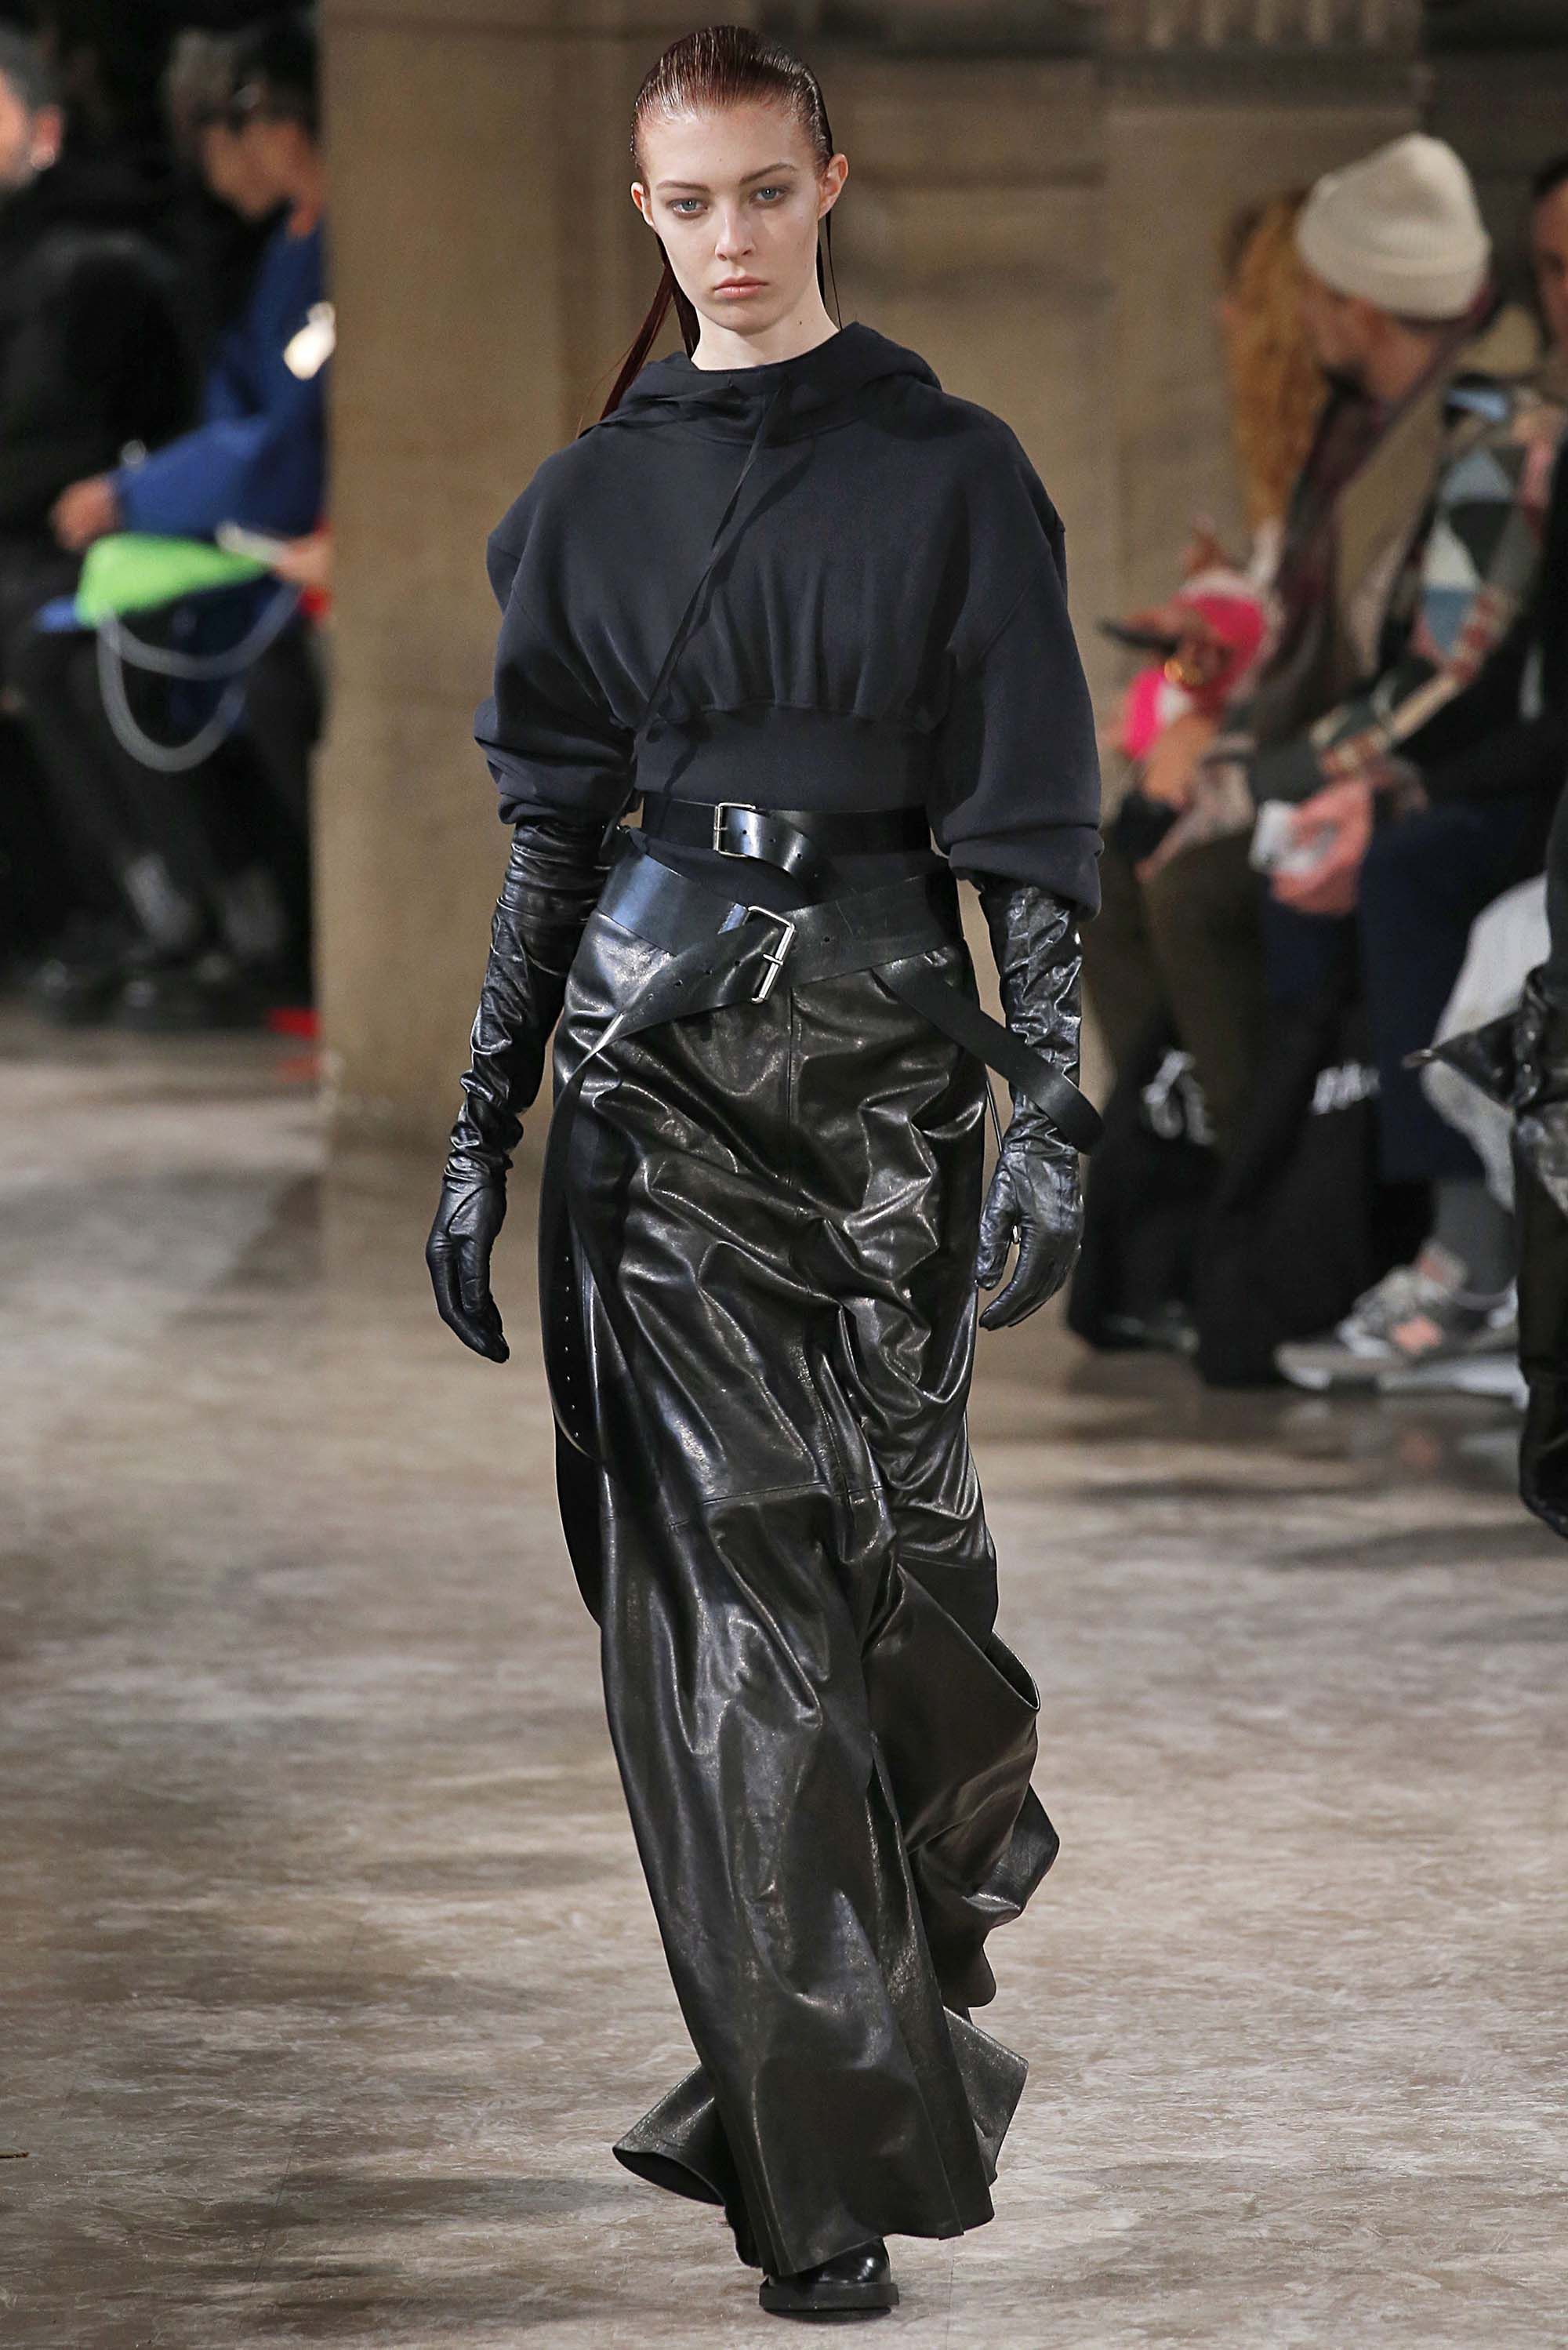 Ann Demeulemeester F/W 18 womenswear #11 - Tagwalk: The Fashion